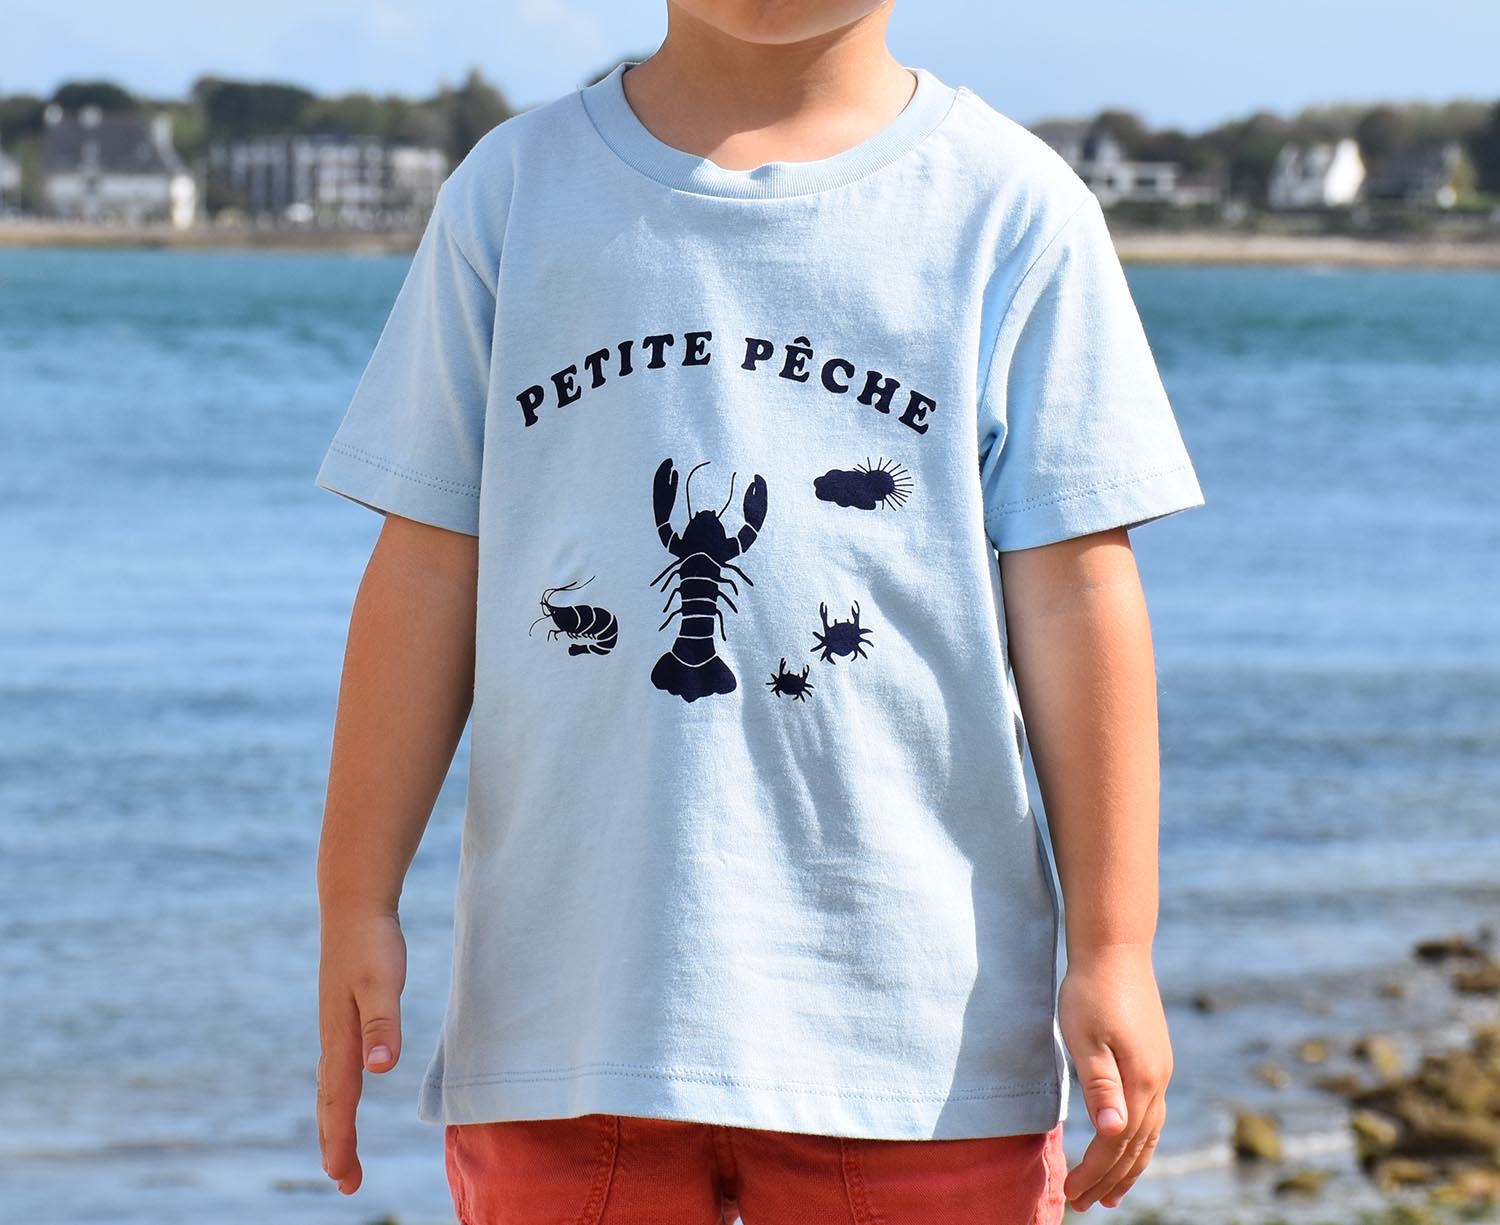 T-Shirt Garçon bleu ciel, petite pêche bleu-marine